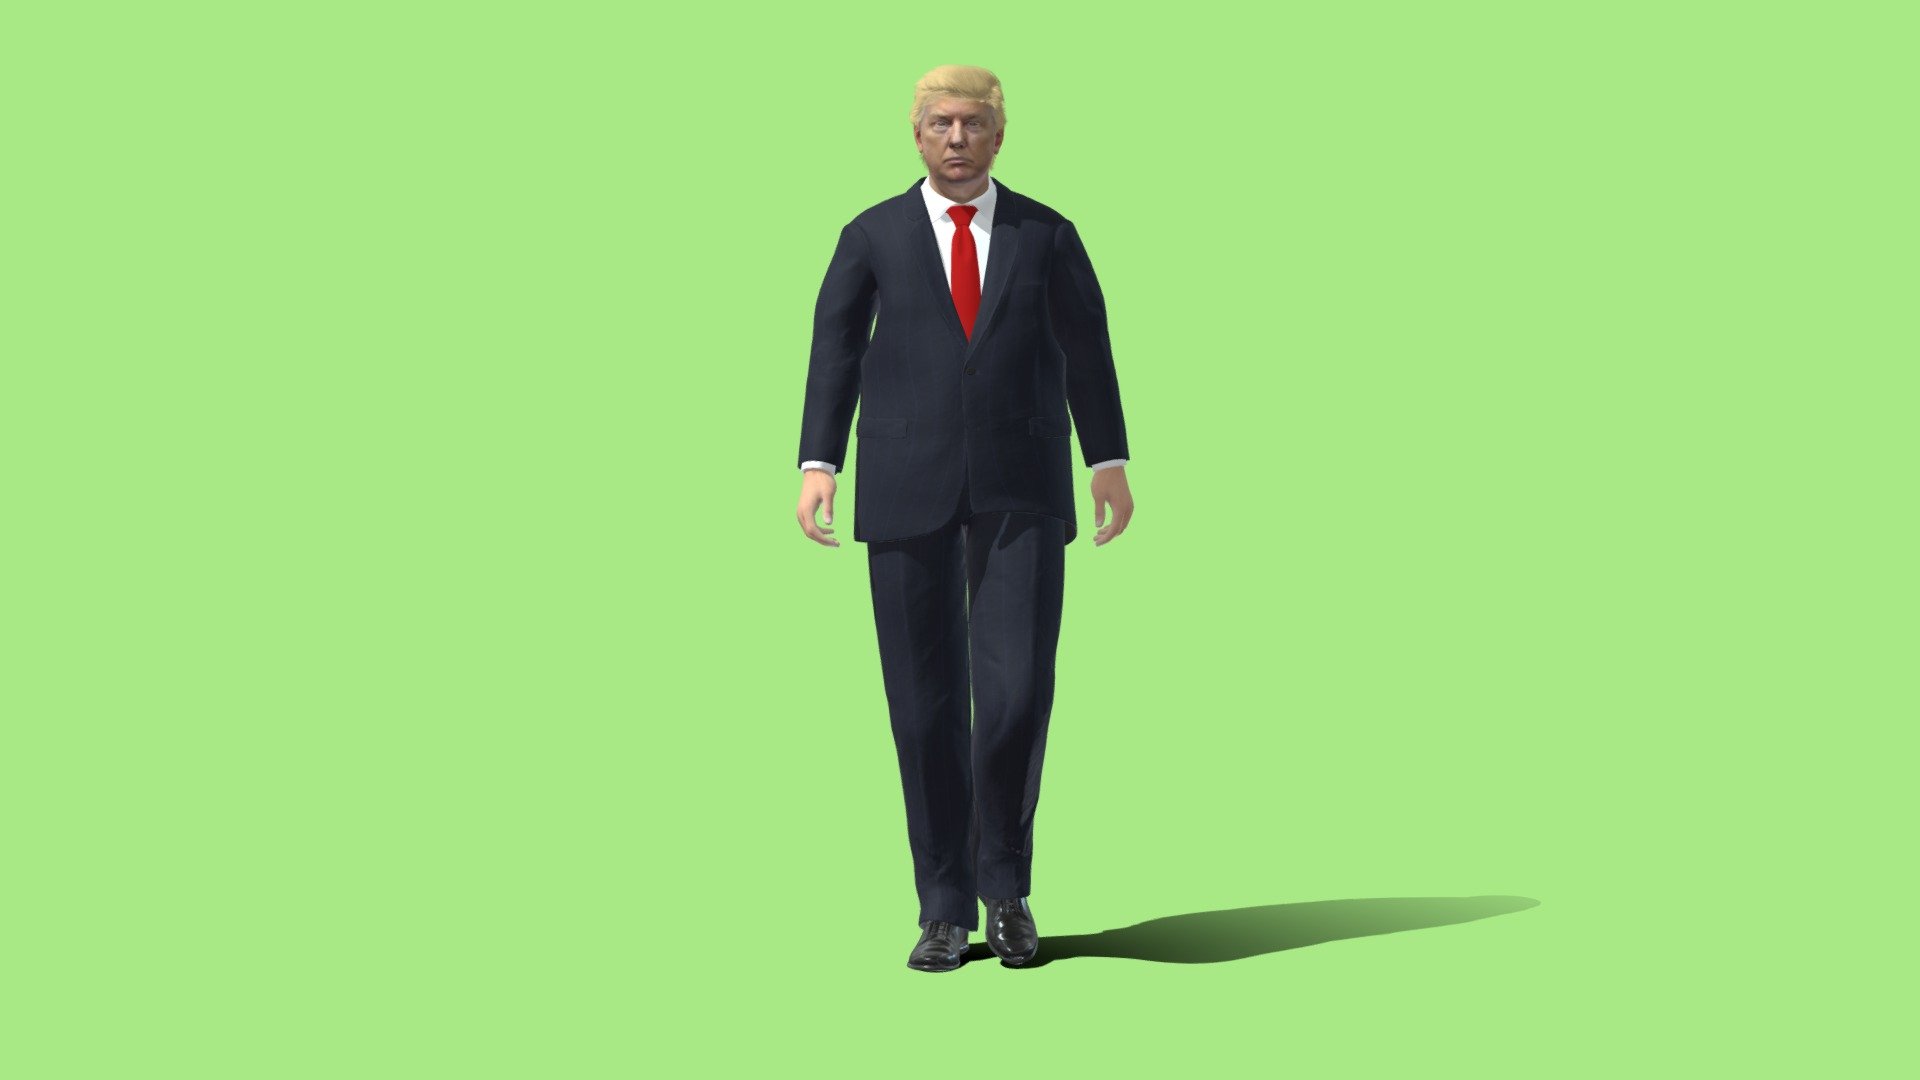 3D Rigged Donald Trump - 3D model by trantanhcm2019 (@trantanhcm2019)  [c6563f5]